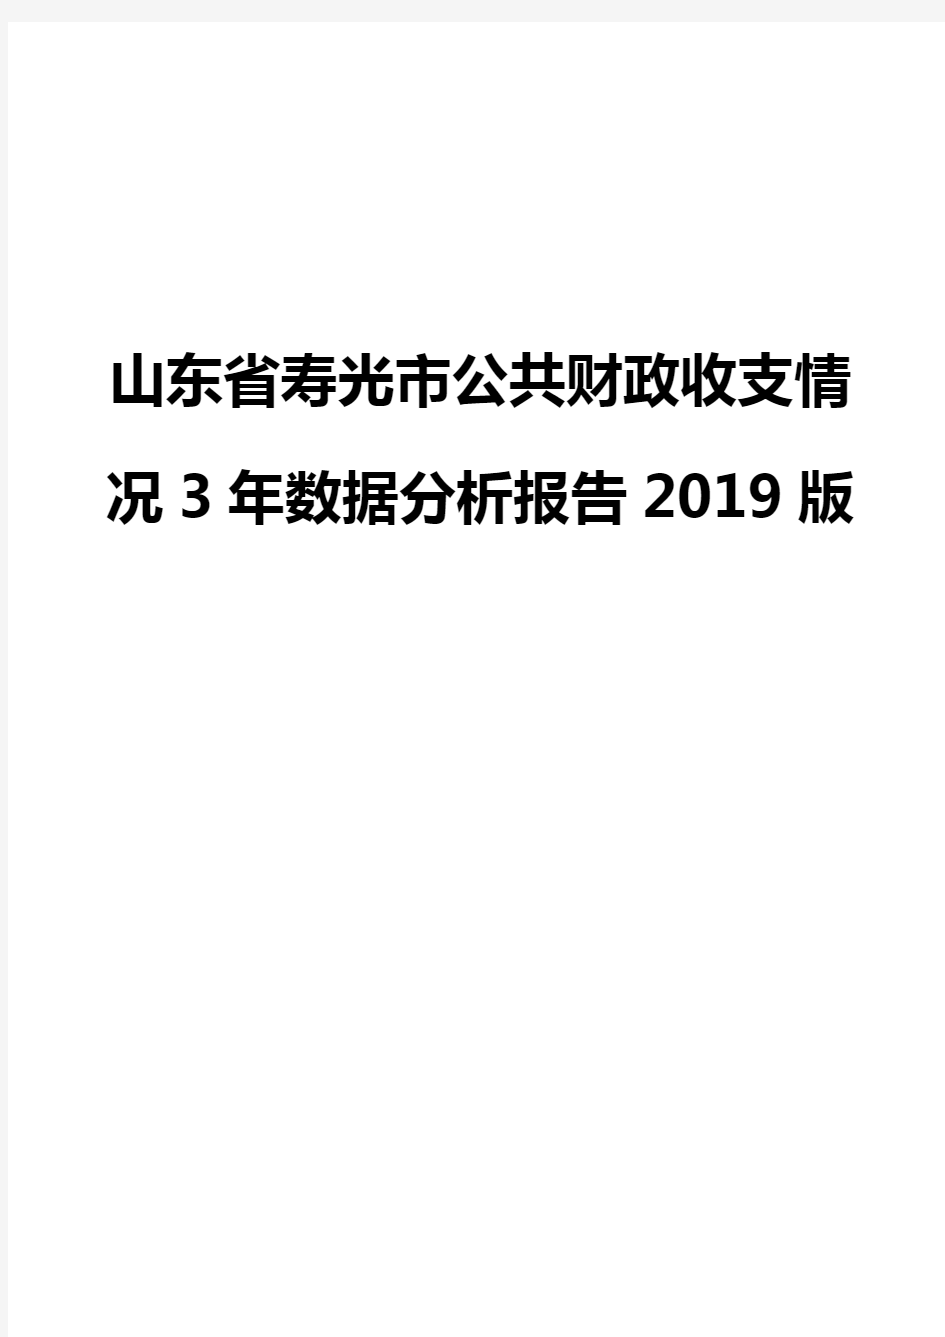 山东省寿光市公共财政收支情况3年数据分析报告2019版